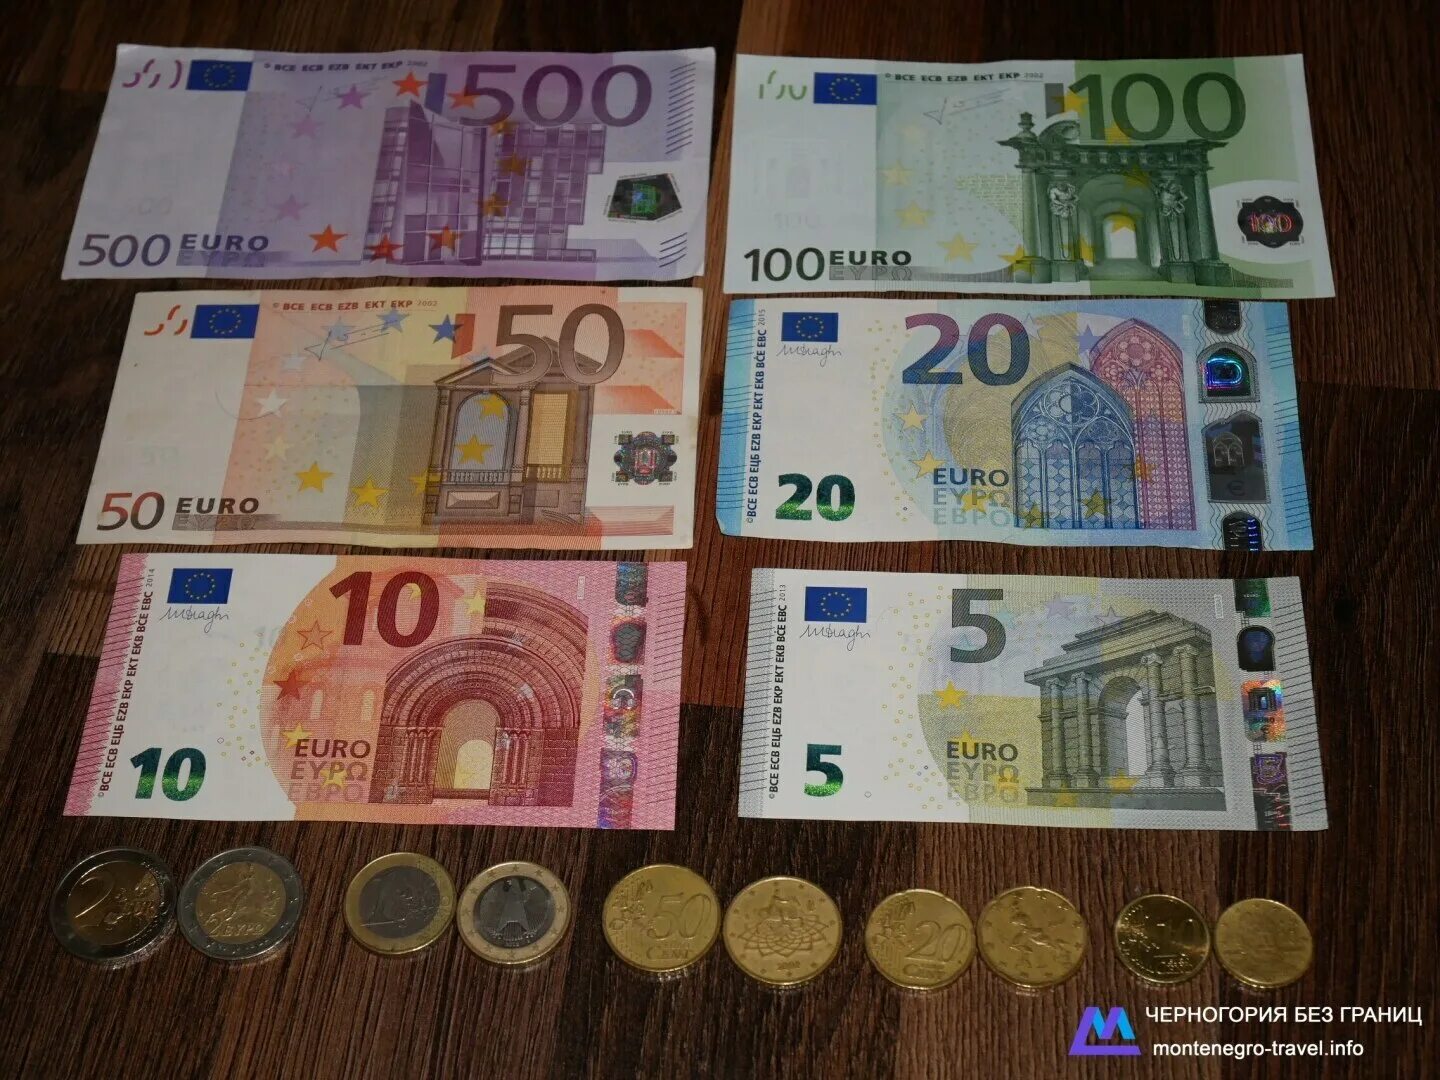 Купюры евро номиналы. Как выглядят евро купюры. Валюта евро номиналы купюр. Каквыгдялят евро?.